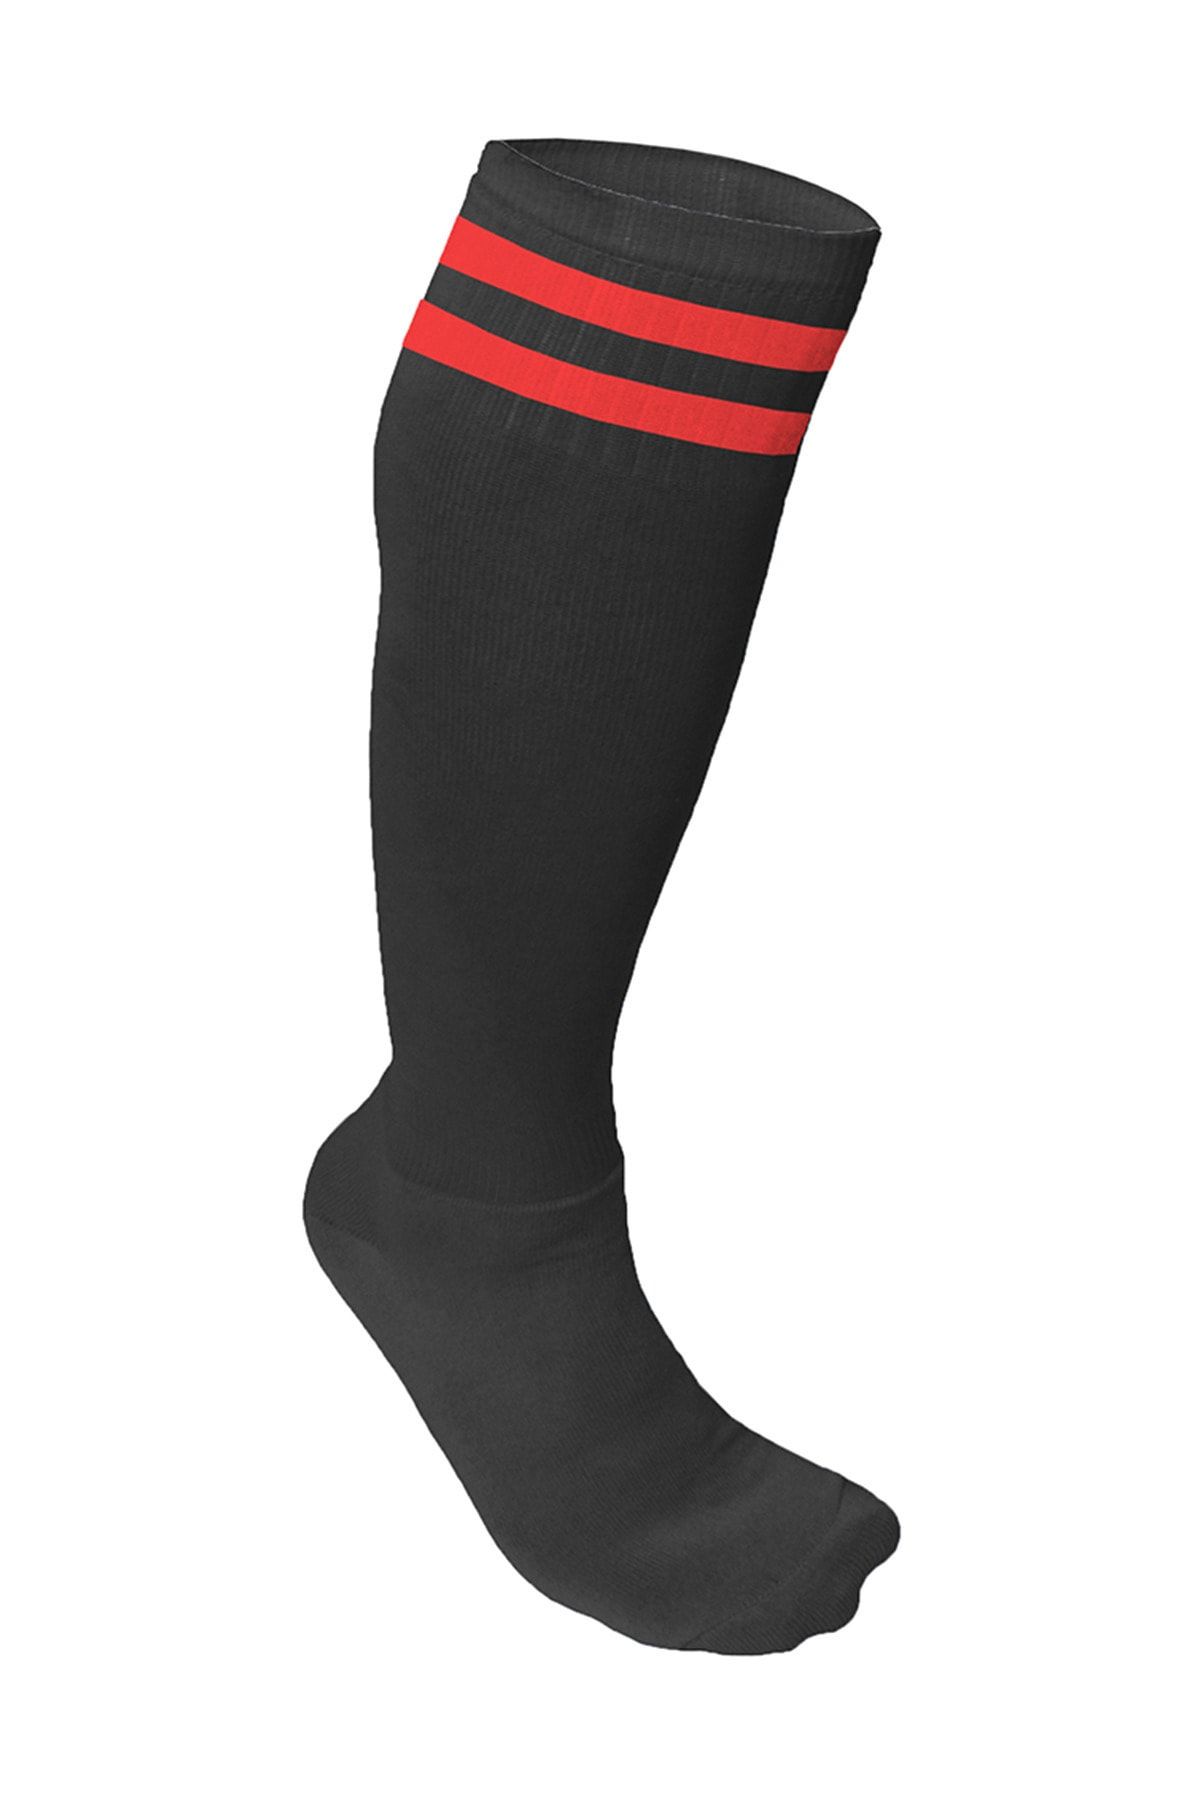 Nacar Süper Futbol Tozluğu-çorabı Siyah Kırmızı